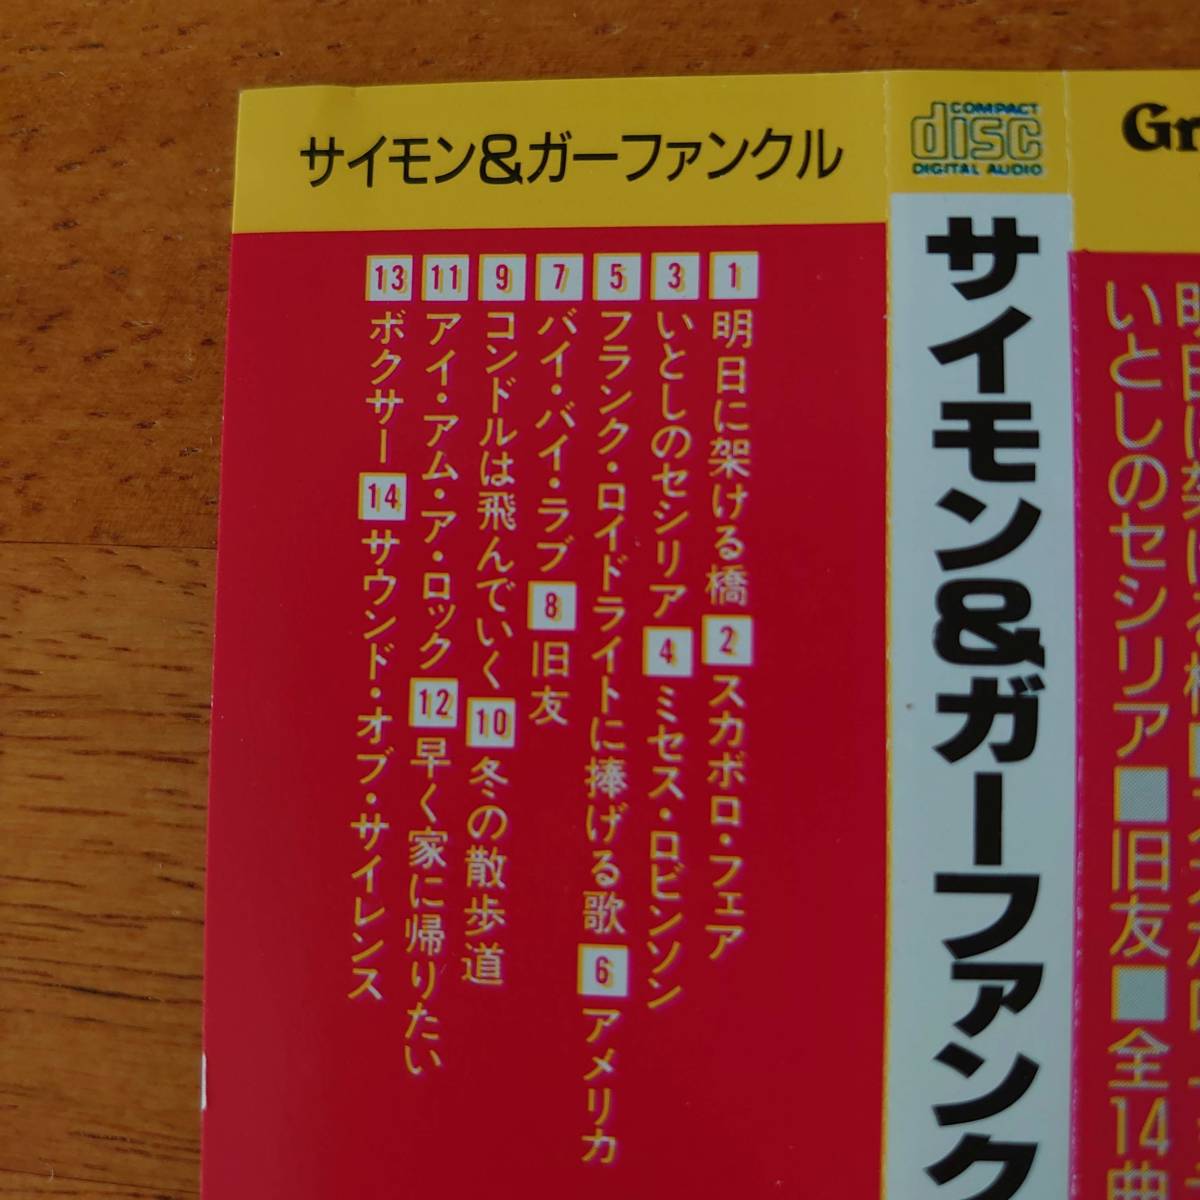 Simon & Garfunkel Greatest Hits サイモン&ガーファンクル グレイテスト・ヒッツ 全14曲 【CD】の画像5